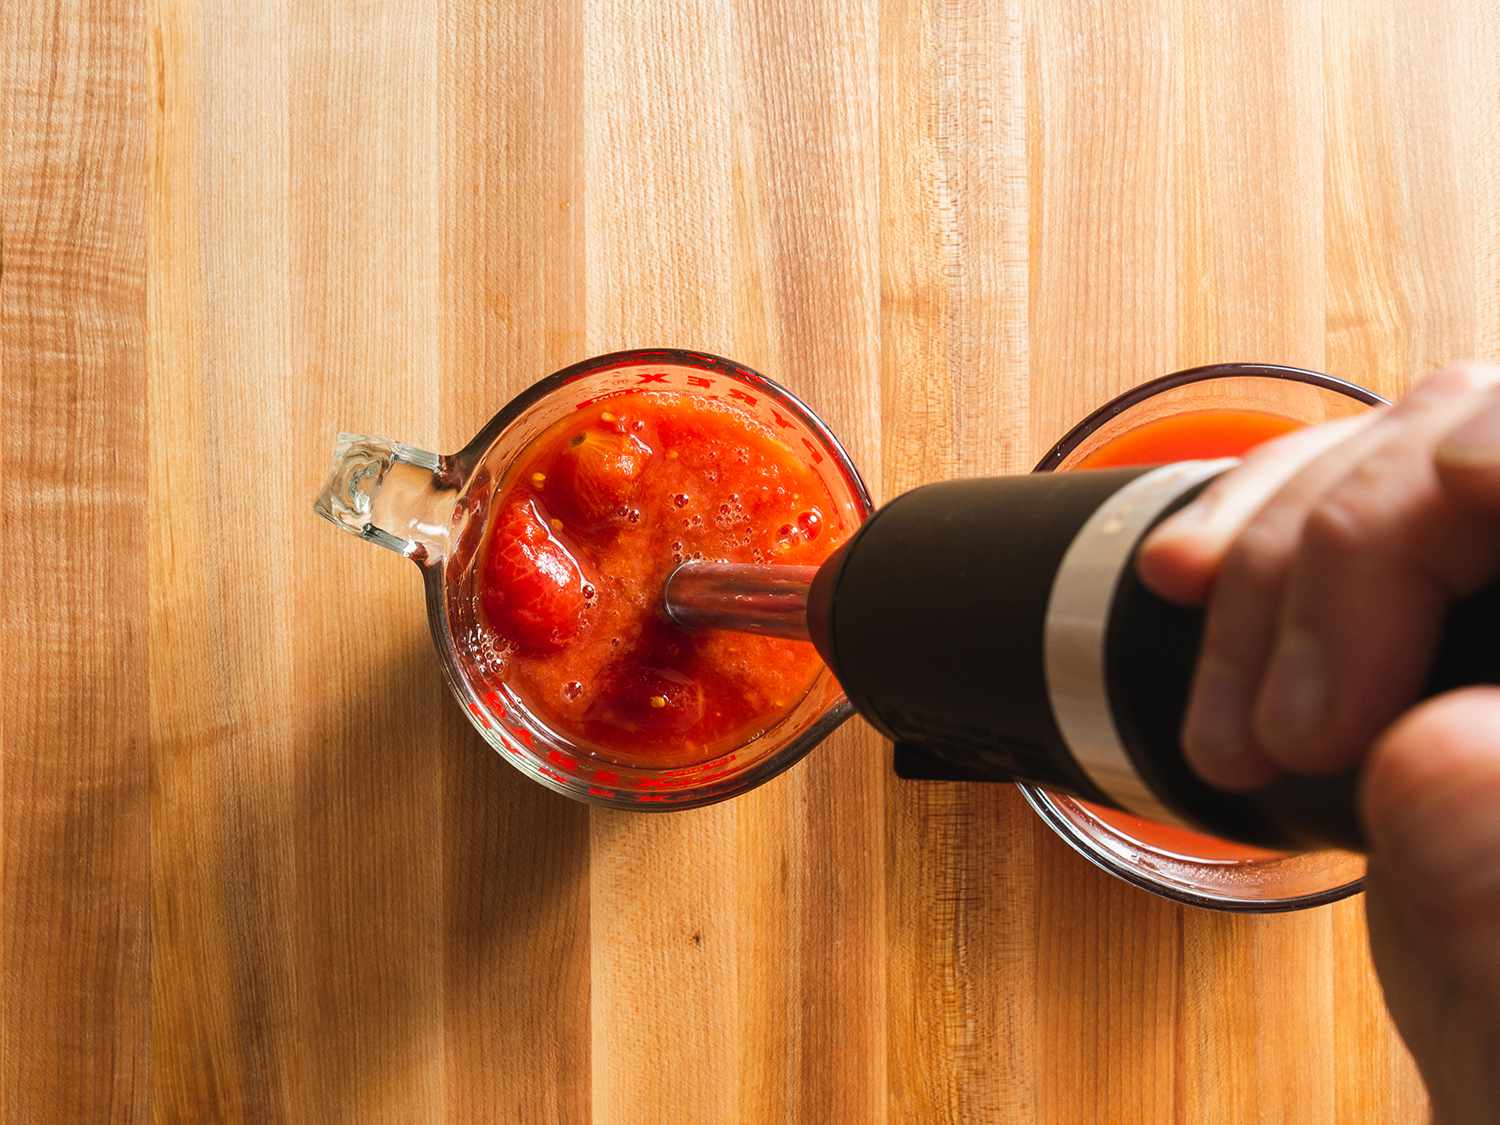 用浸入式搅拌机搅拌罐装去皮西红柿